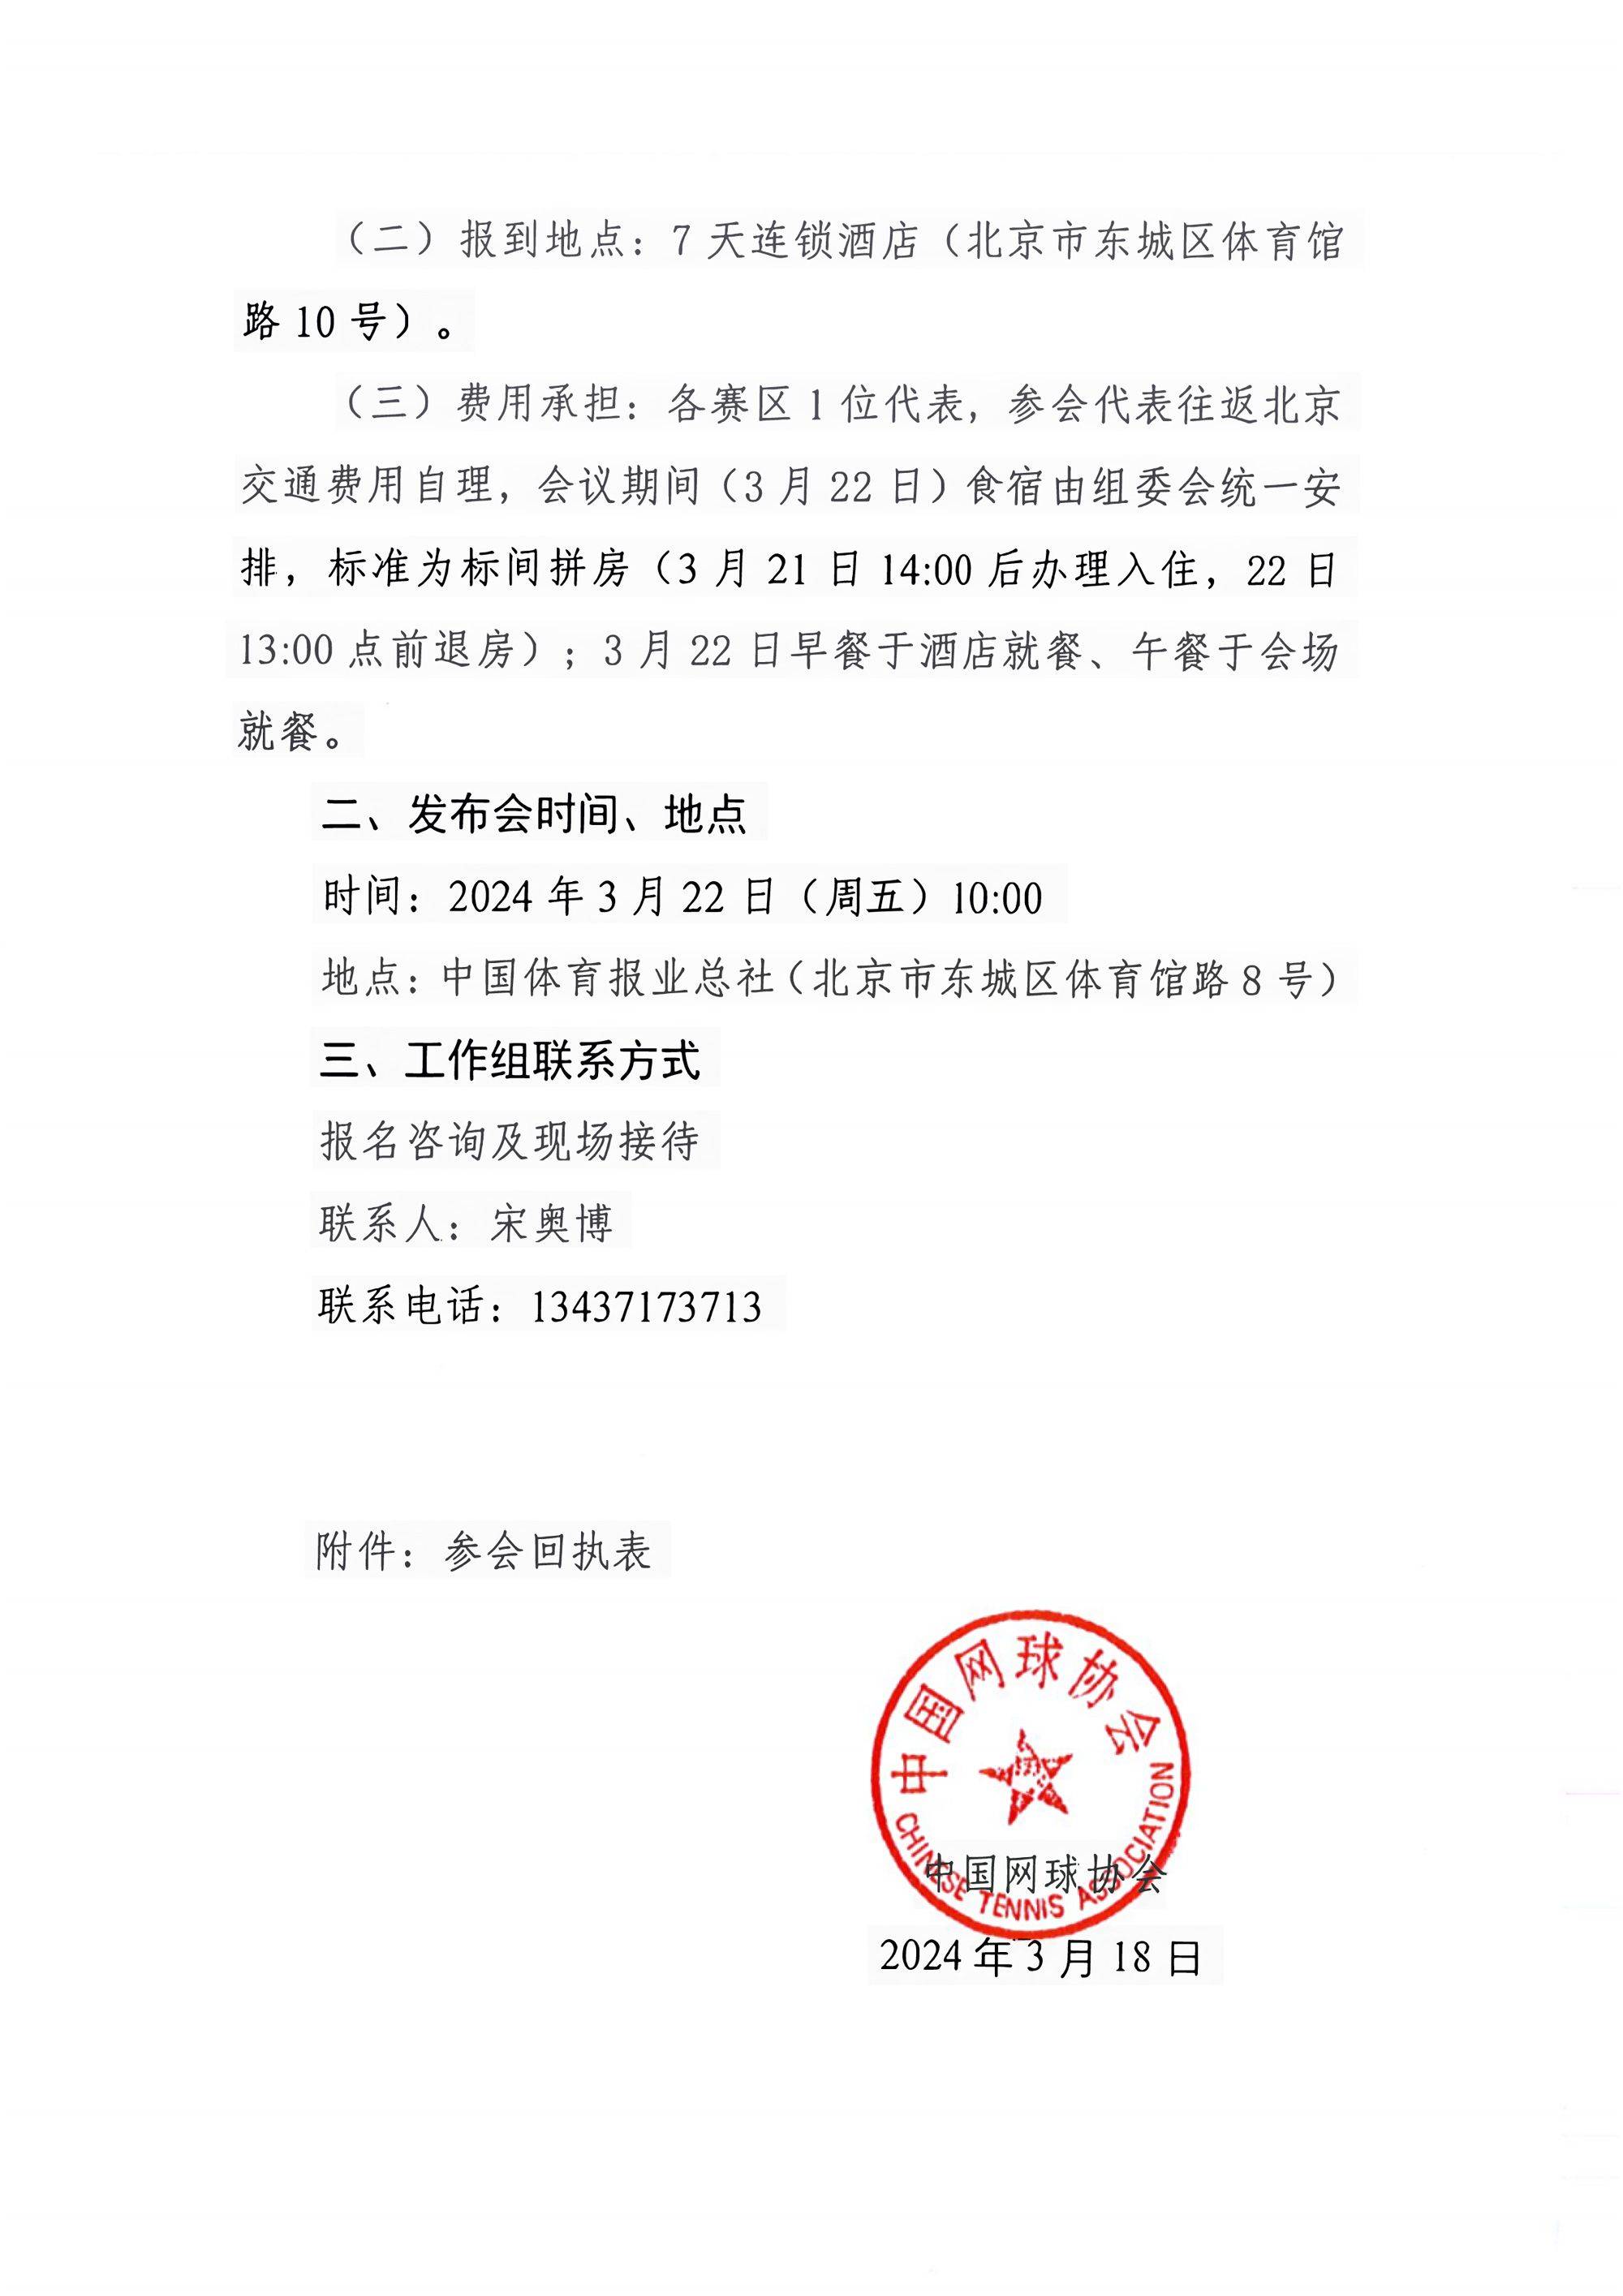 中国大众网球城市挑战赛新闻发布会邀请函